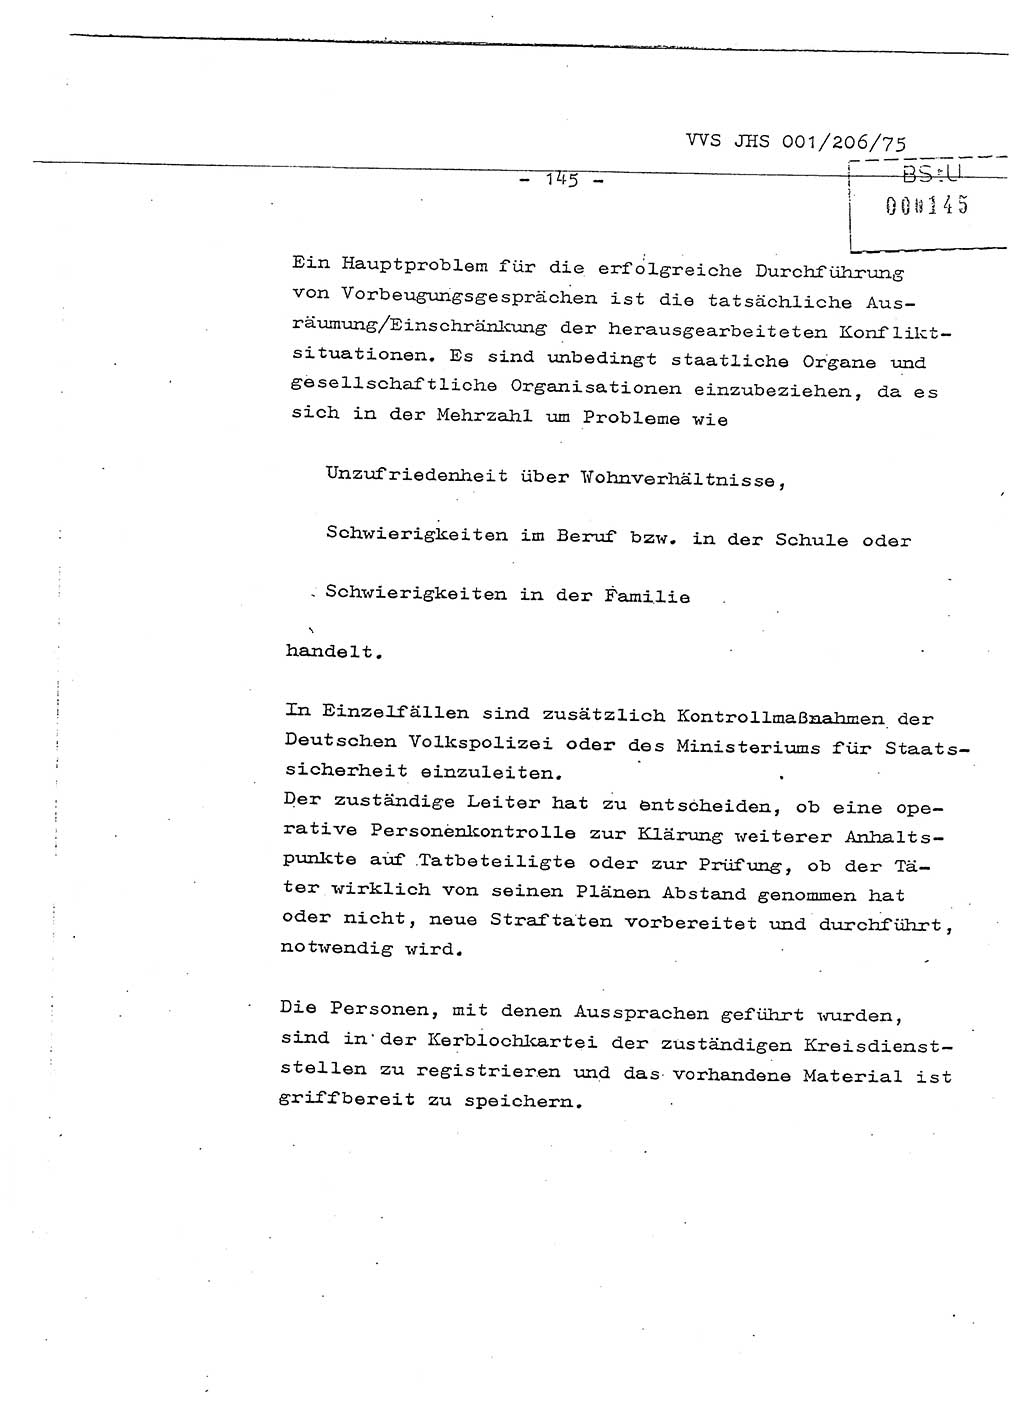 Dissertation Generalmajor Manfred Hummitzsch (Leiter der BV Leipzig), Generalmajor Heinz Fiedler (HA Ⅵ), Oberst Rolf Fister (HA Ⅸ), Ministerium für Staatssicherheit (MfS) [Deutsche Demokratische Republik (DDR)], Juristische Hochschule (JHS), Vertrauliche Verschlußsache (VVS) 001-206/75, Potsdam 1975, Seite 145 (Diss. MfS DDR JHS VVS 001-206/75 1975, S. 145)